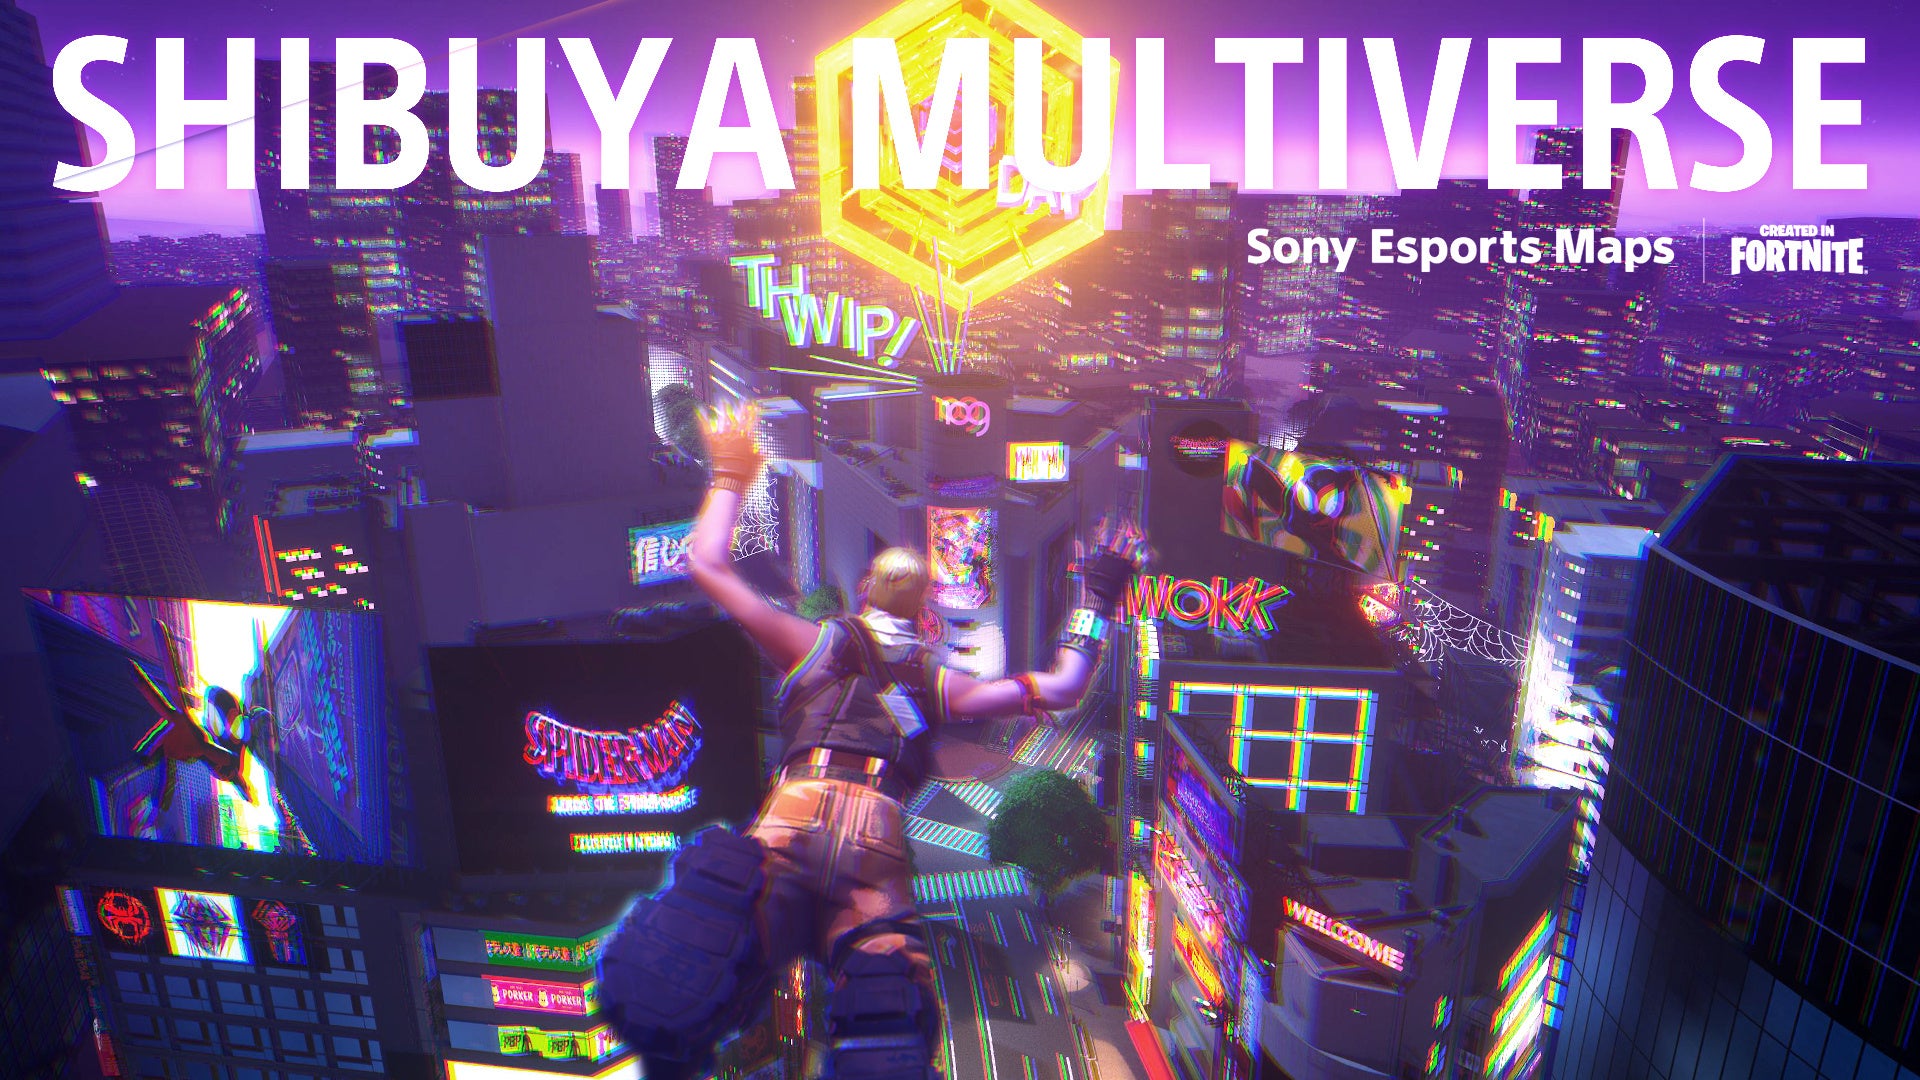 『フォートナイト』上でプレイ可能なオリジナルマップ「SHIBUYA MULTIVERSE」をSony Esports Project が公開